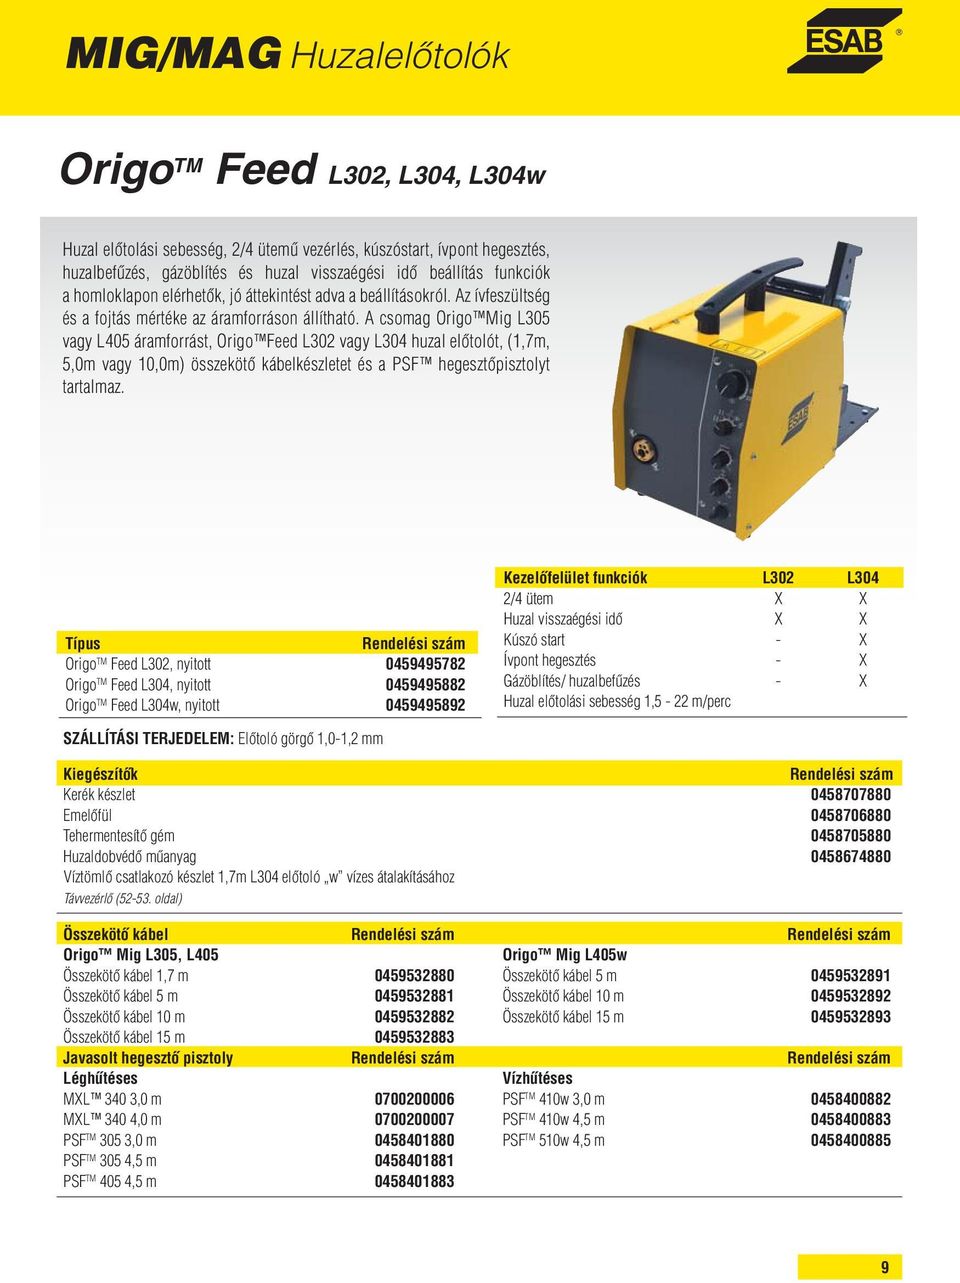 A csomag Origo Mig L305 vagy L405 áramforrást, Origo Feed L302 vagy L304 huzal előtolót, (1,7m, 5,0m vagy 10,0m) összekötő kábelkészletet és a PSF hegesztőpisztolyt tartalmaz.